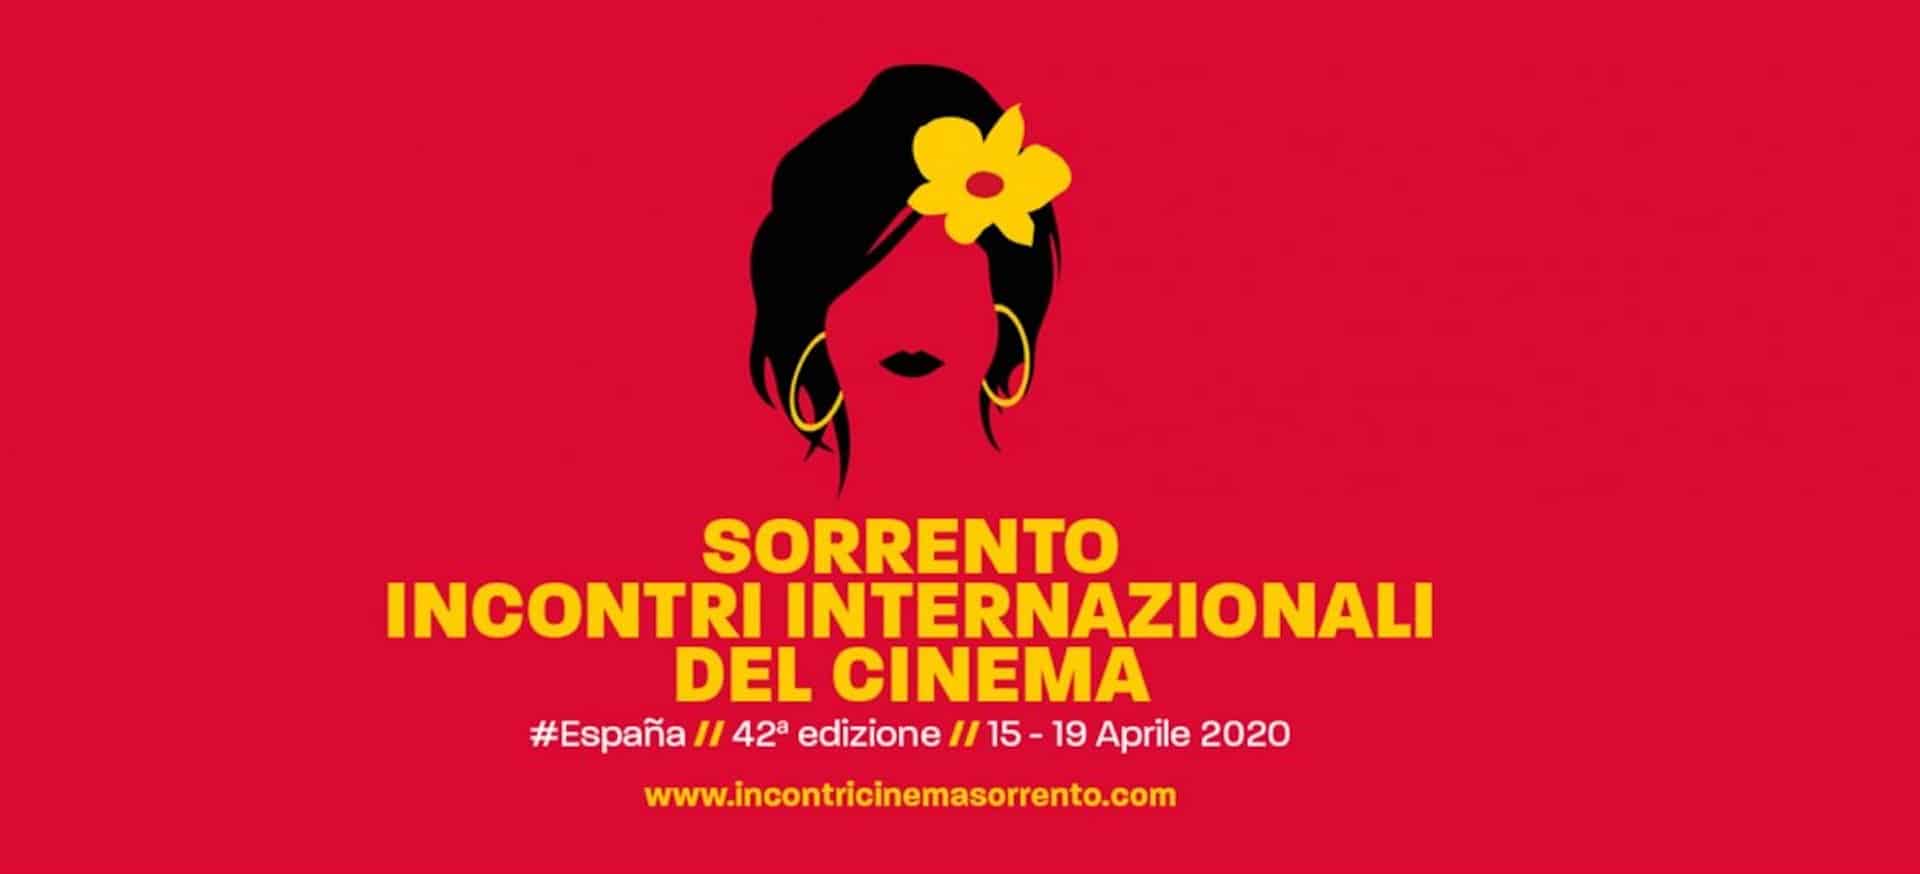 Incontri internazionali del Cinema di Sorrento 2020: focus sulla Spagna